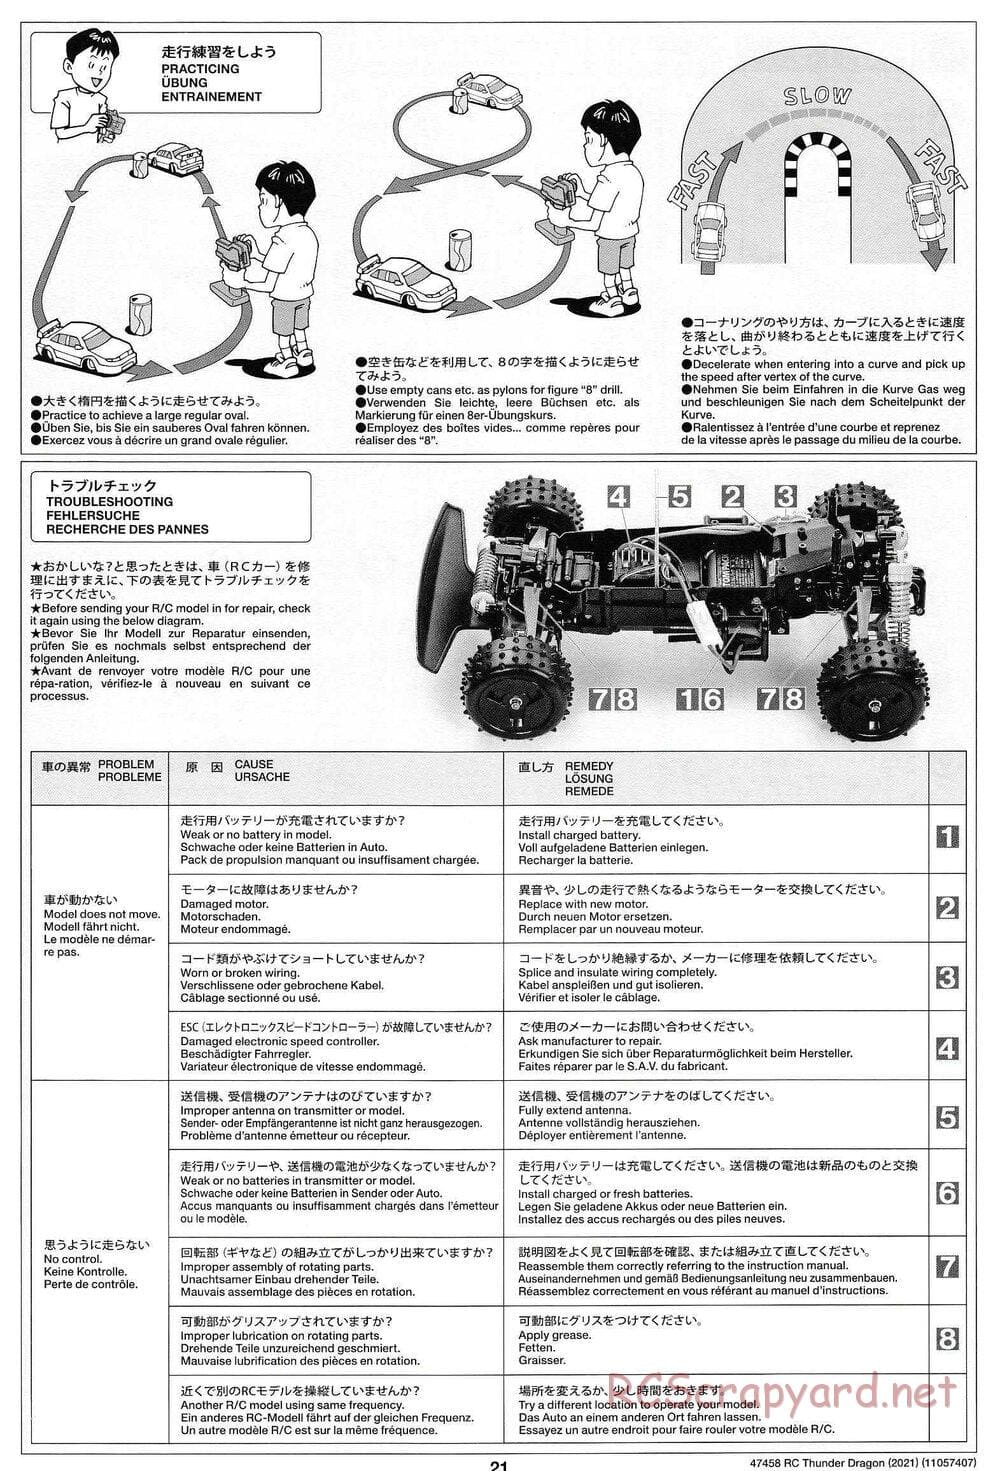 Tamiya - Thunder Dragon (2021) Chassis - Manual - Page 21